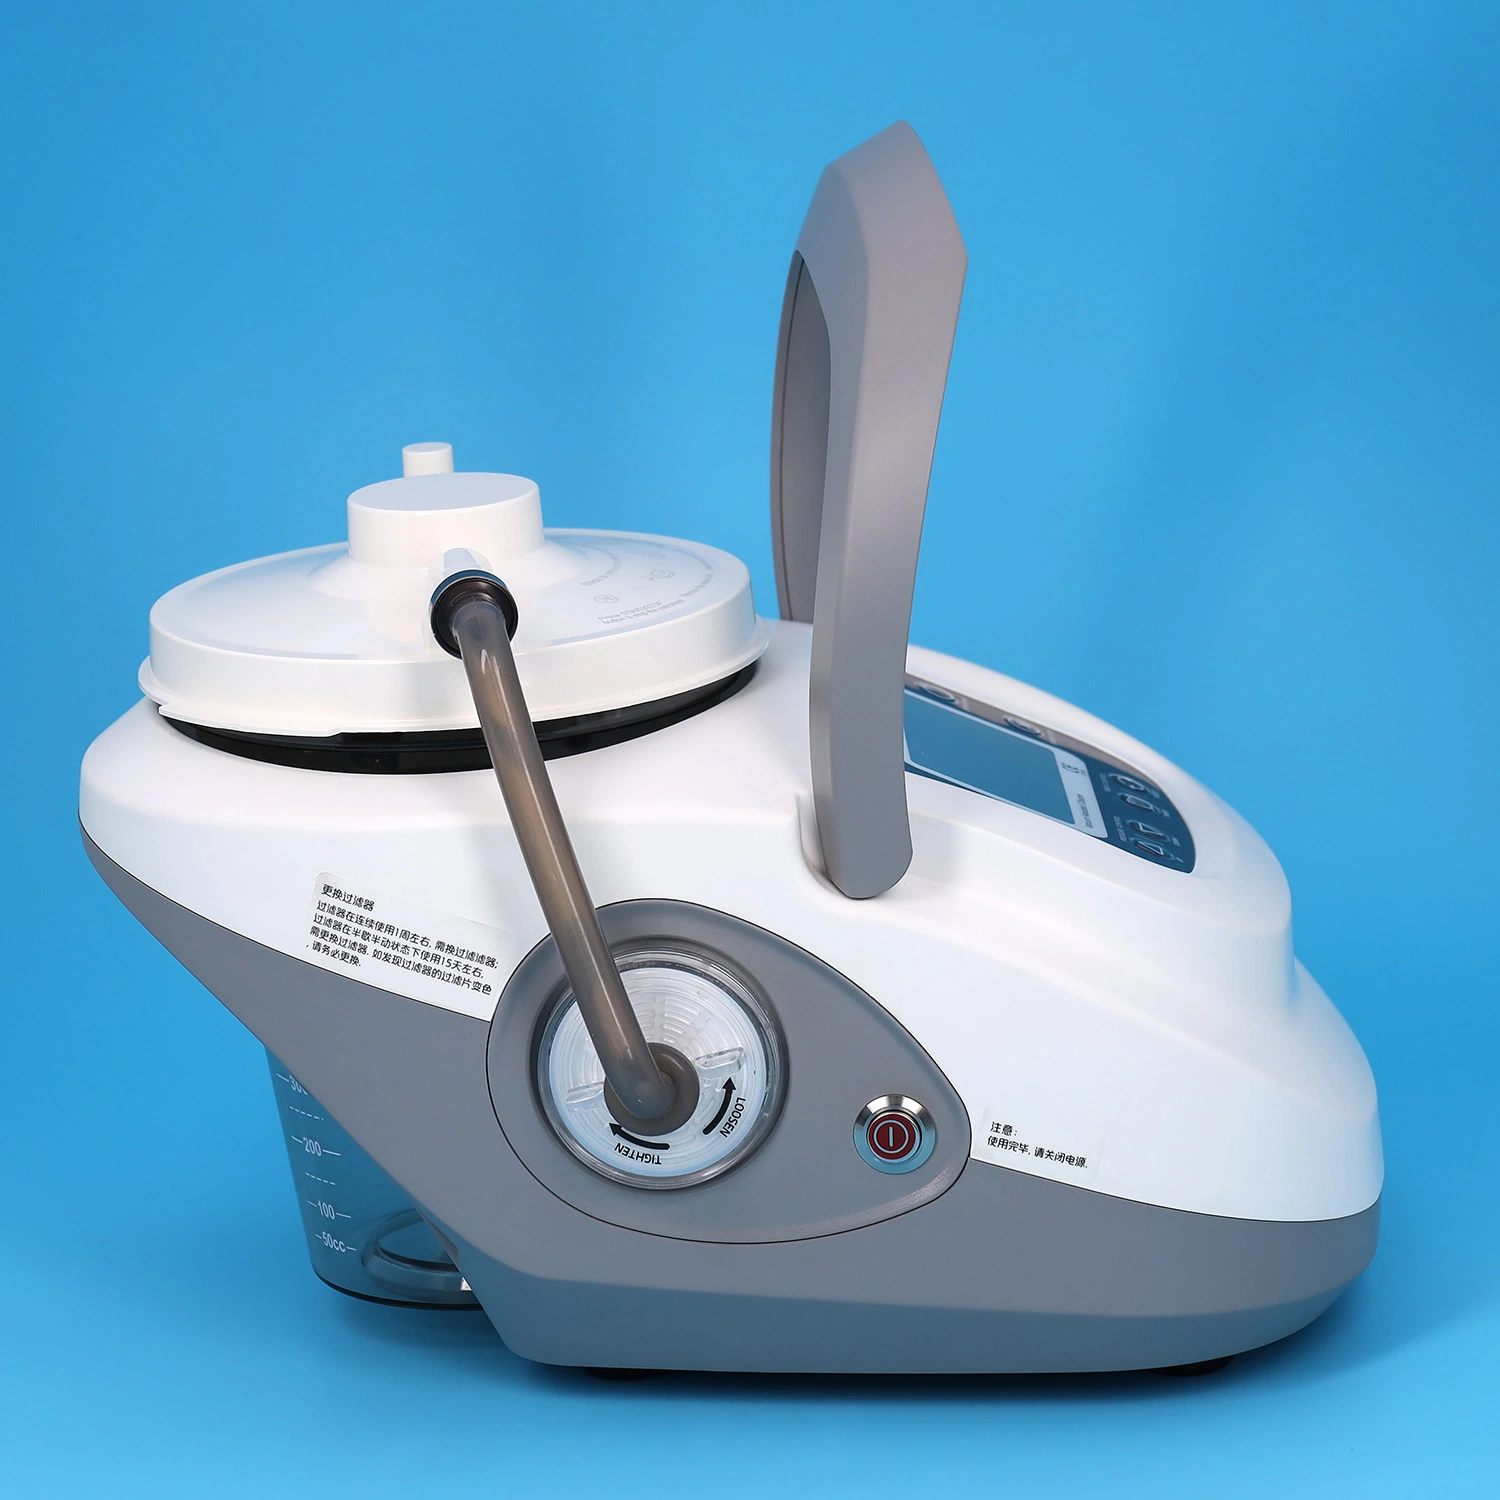 العلاج VAC/Npwt المعدات الضغط السلبي آلة معالجة الصوت في وضع Wound (الجرح) العناية